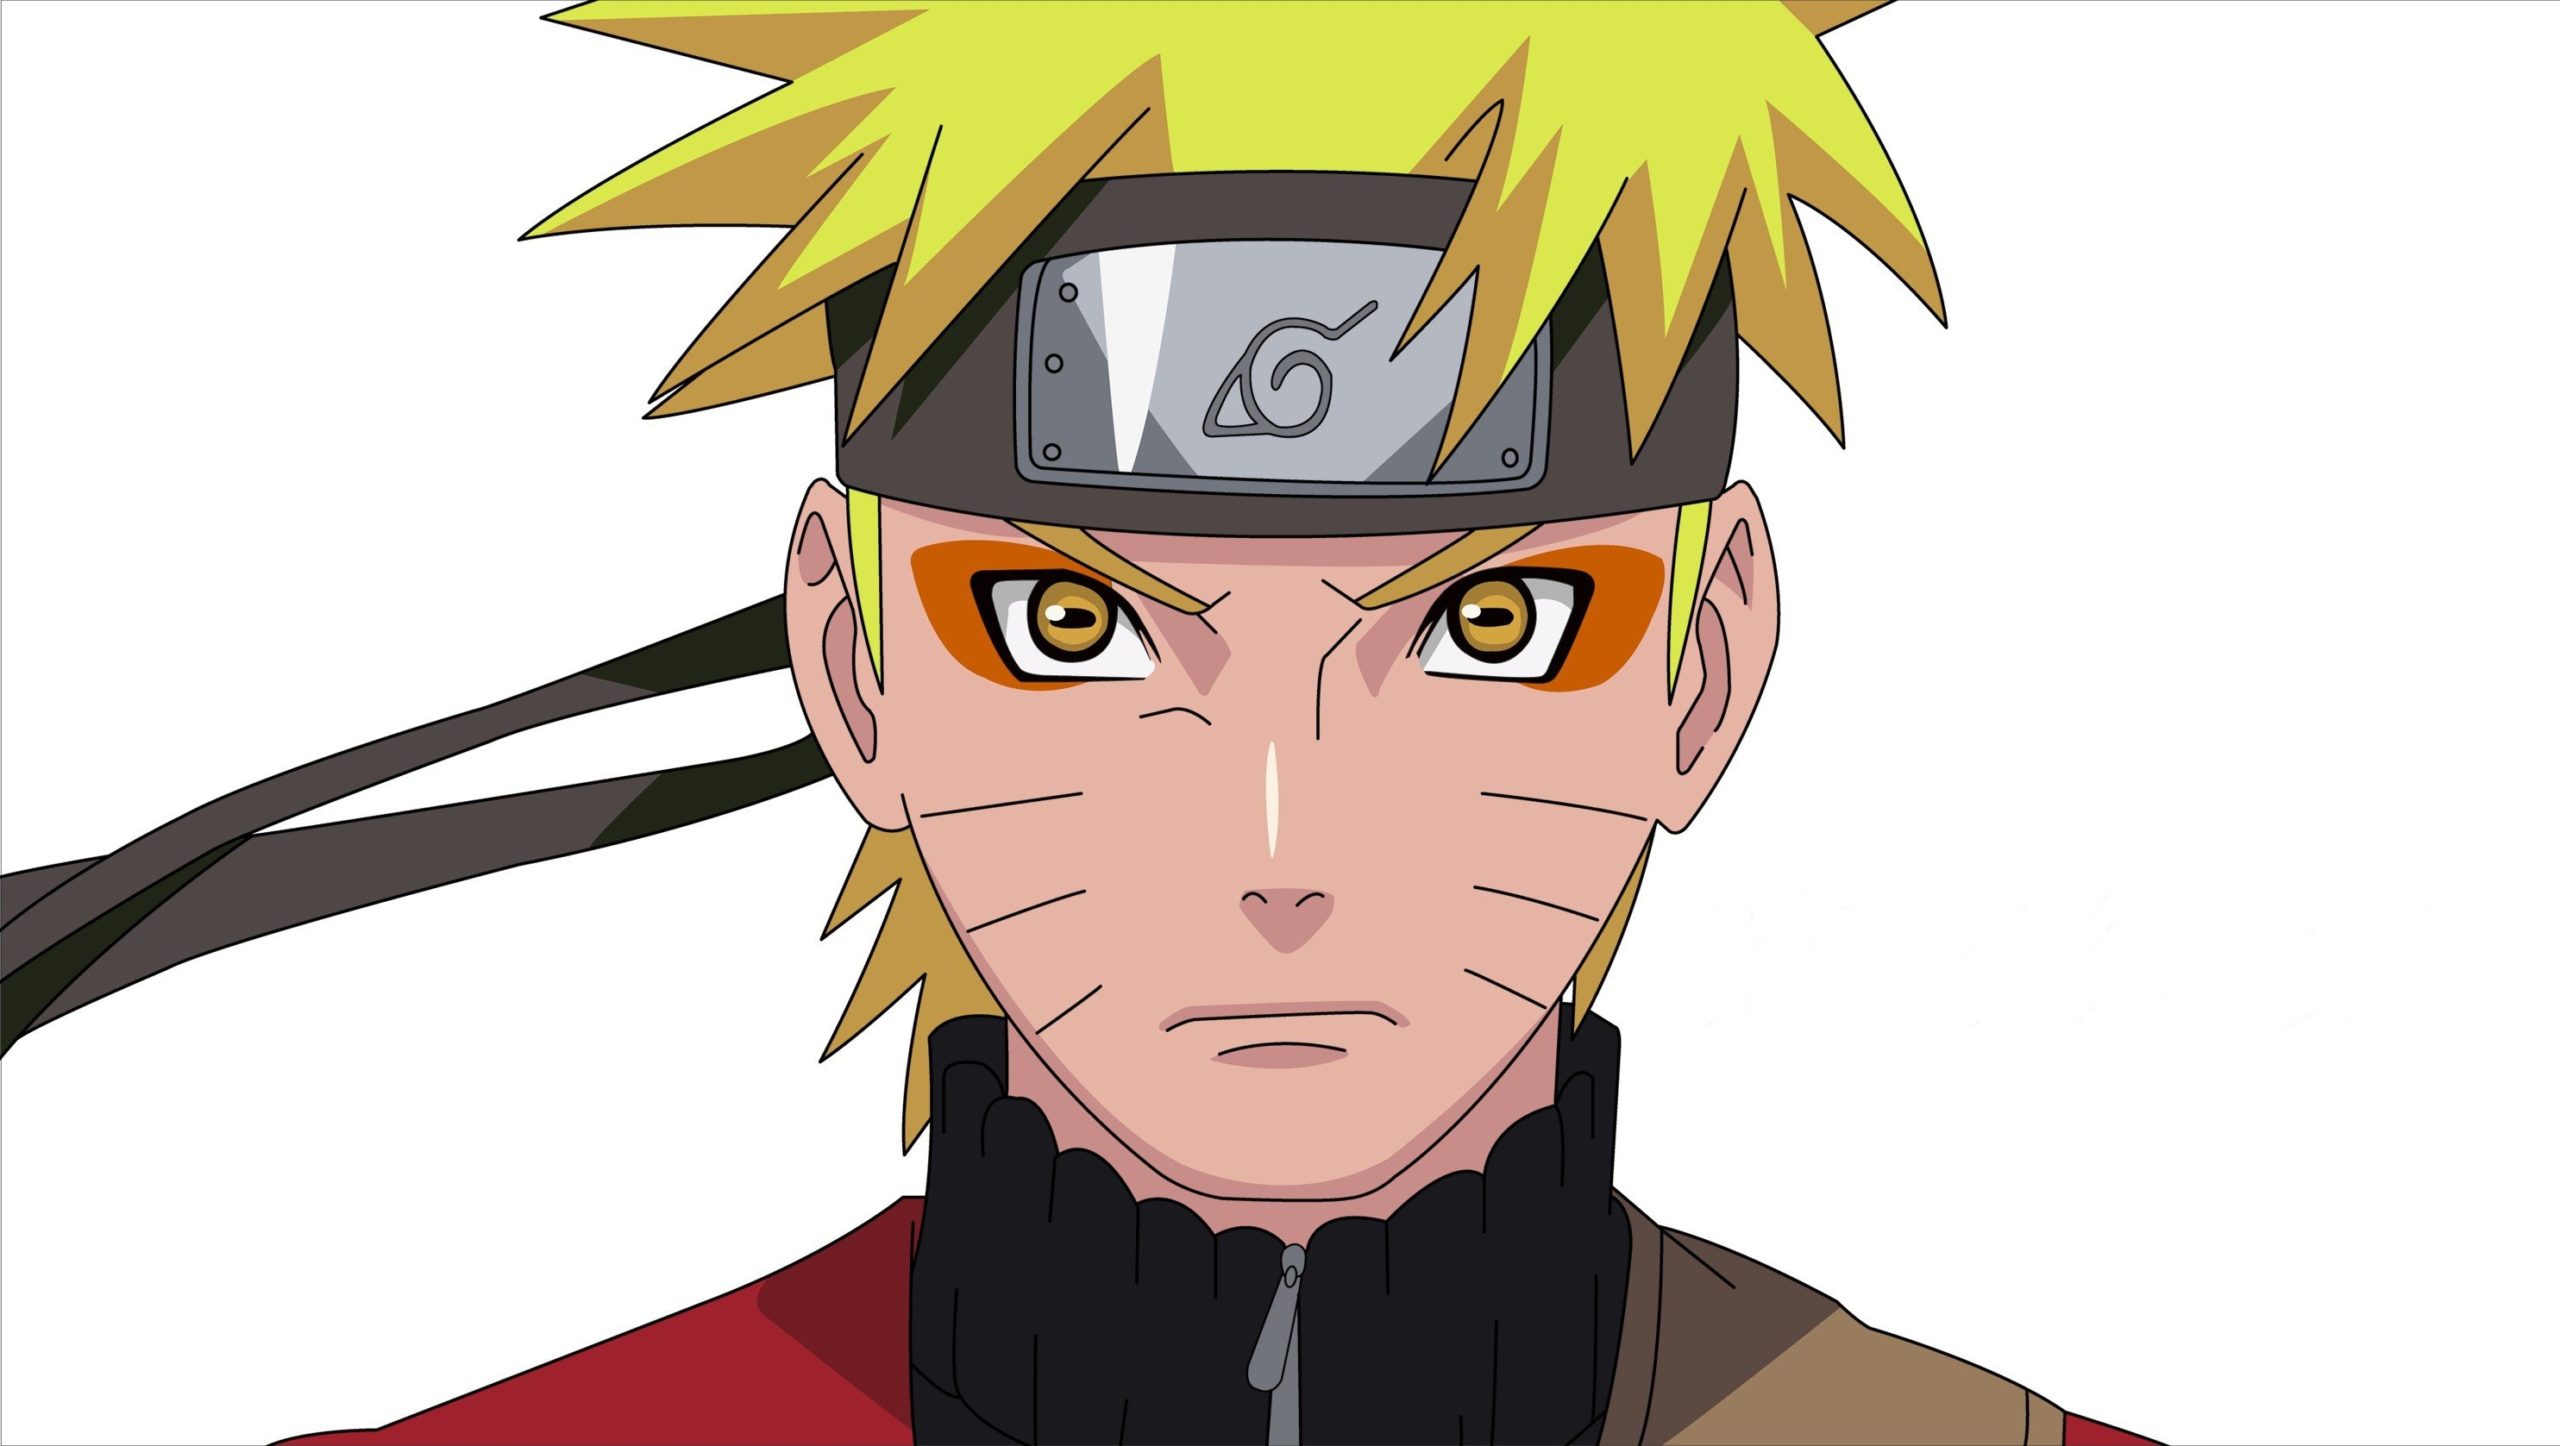 Vc conhece muito o Anime Naruto?